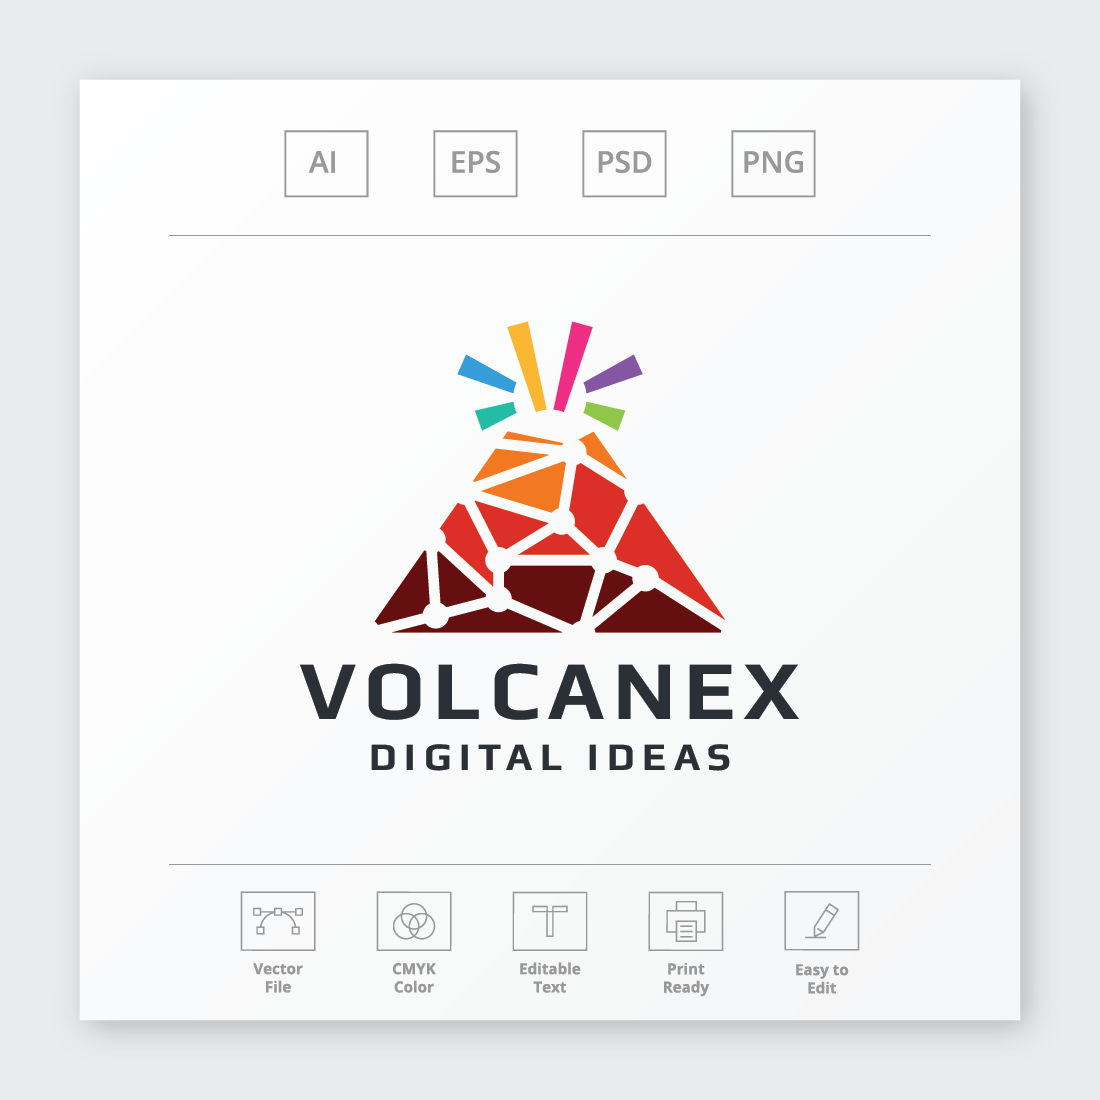 Volcanex Letter V Logo cover image.